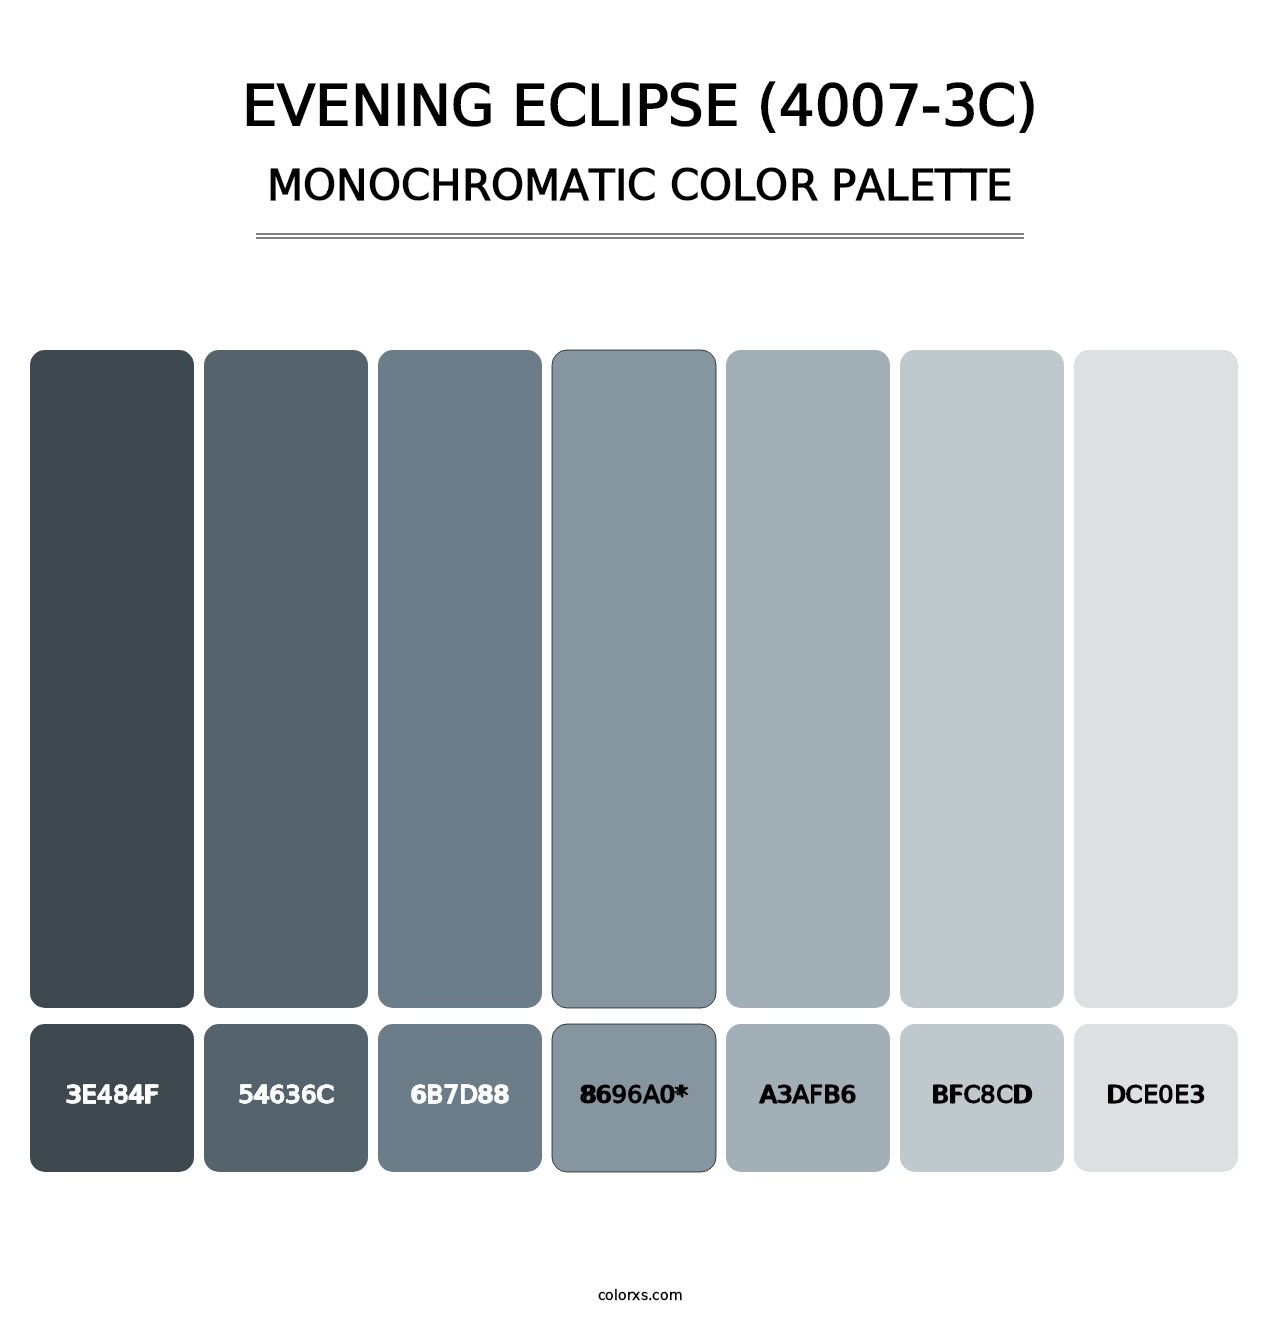 Evening Eclipse (4007-3C) - Monochromatic Color Palette